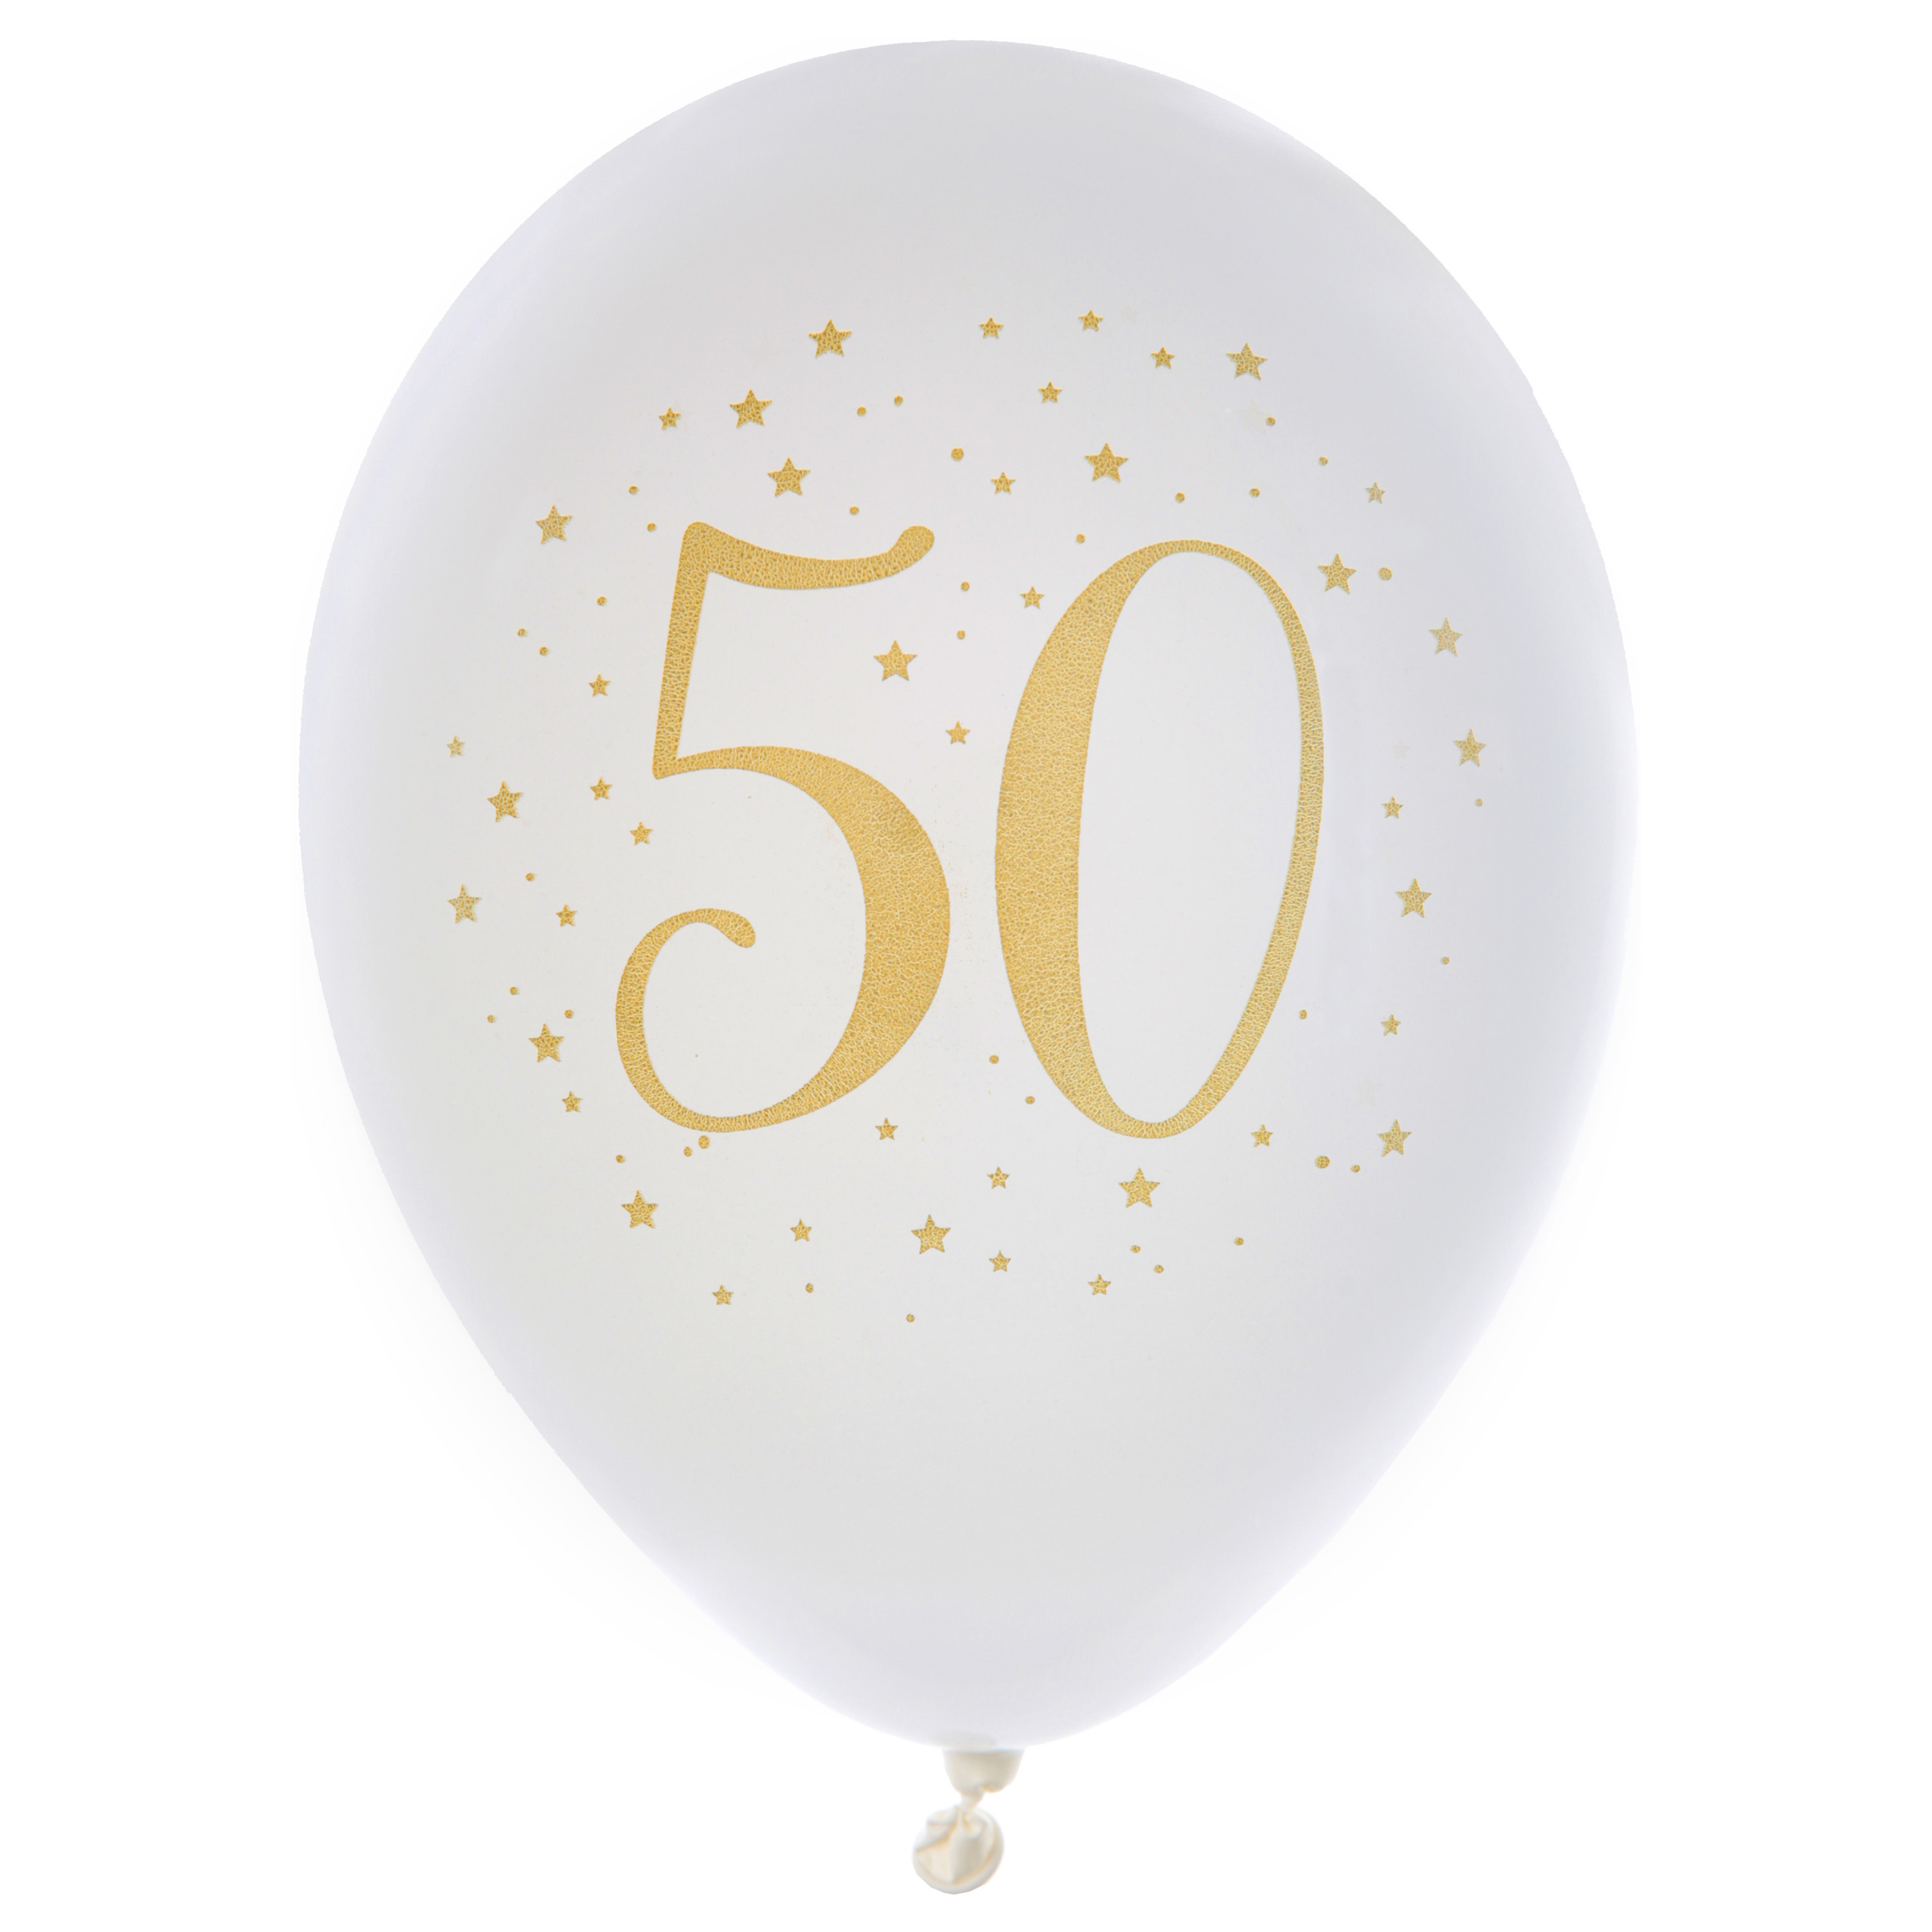 Santex verjaardag leeftijd ballonnen 50 jaar 8x stuks wit-goud 23 cm Abraham-Sarah